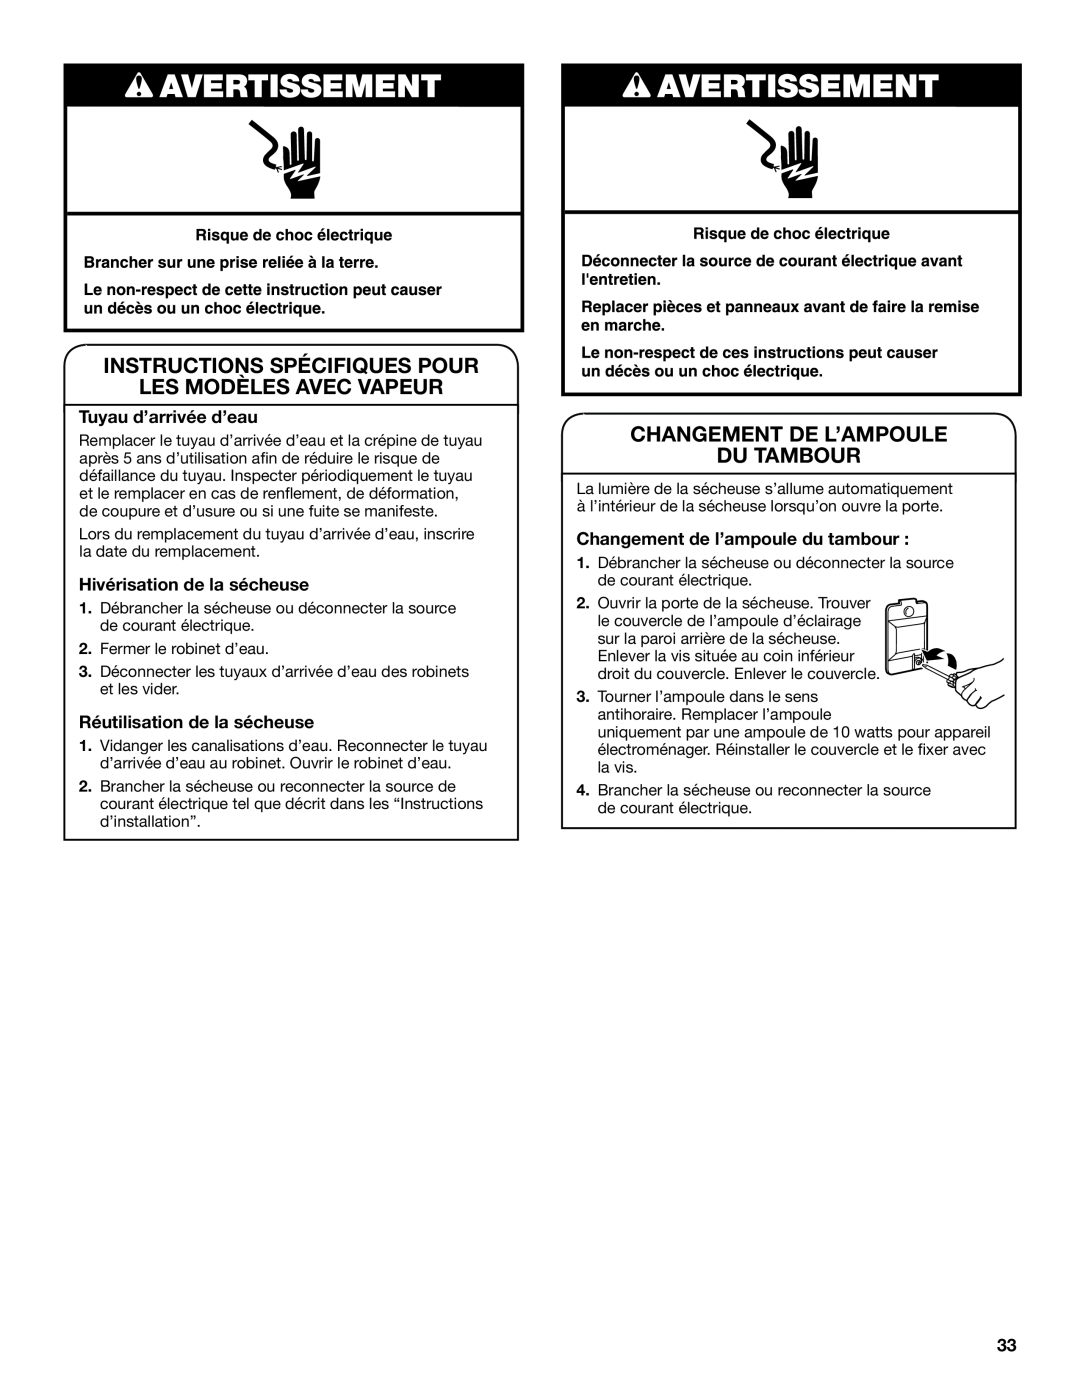 Maytag W10385091A - SP manual Instructions Spécifiques Pour Les Modèles Avec Vapeur, Changement De L’Ampoule Du Tambour 